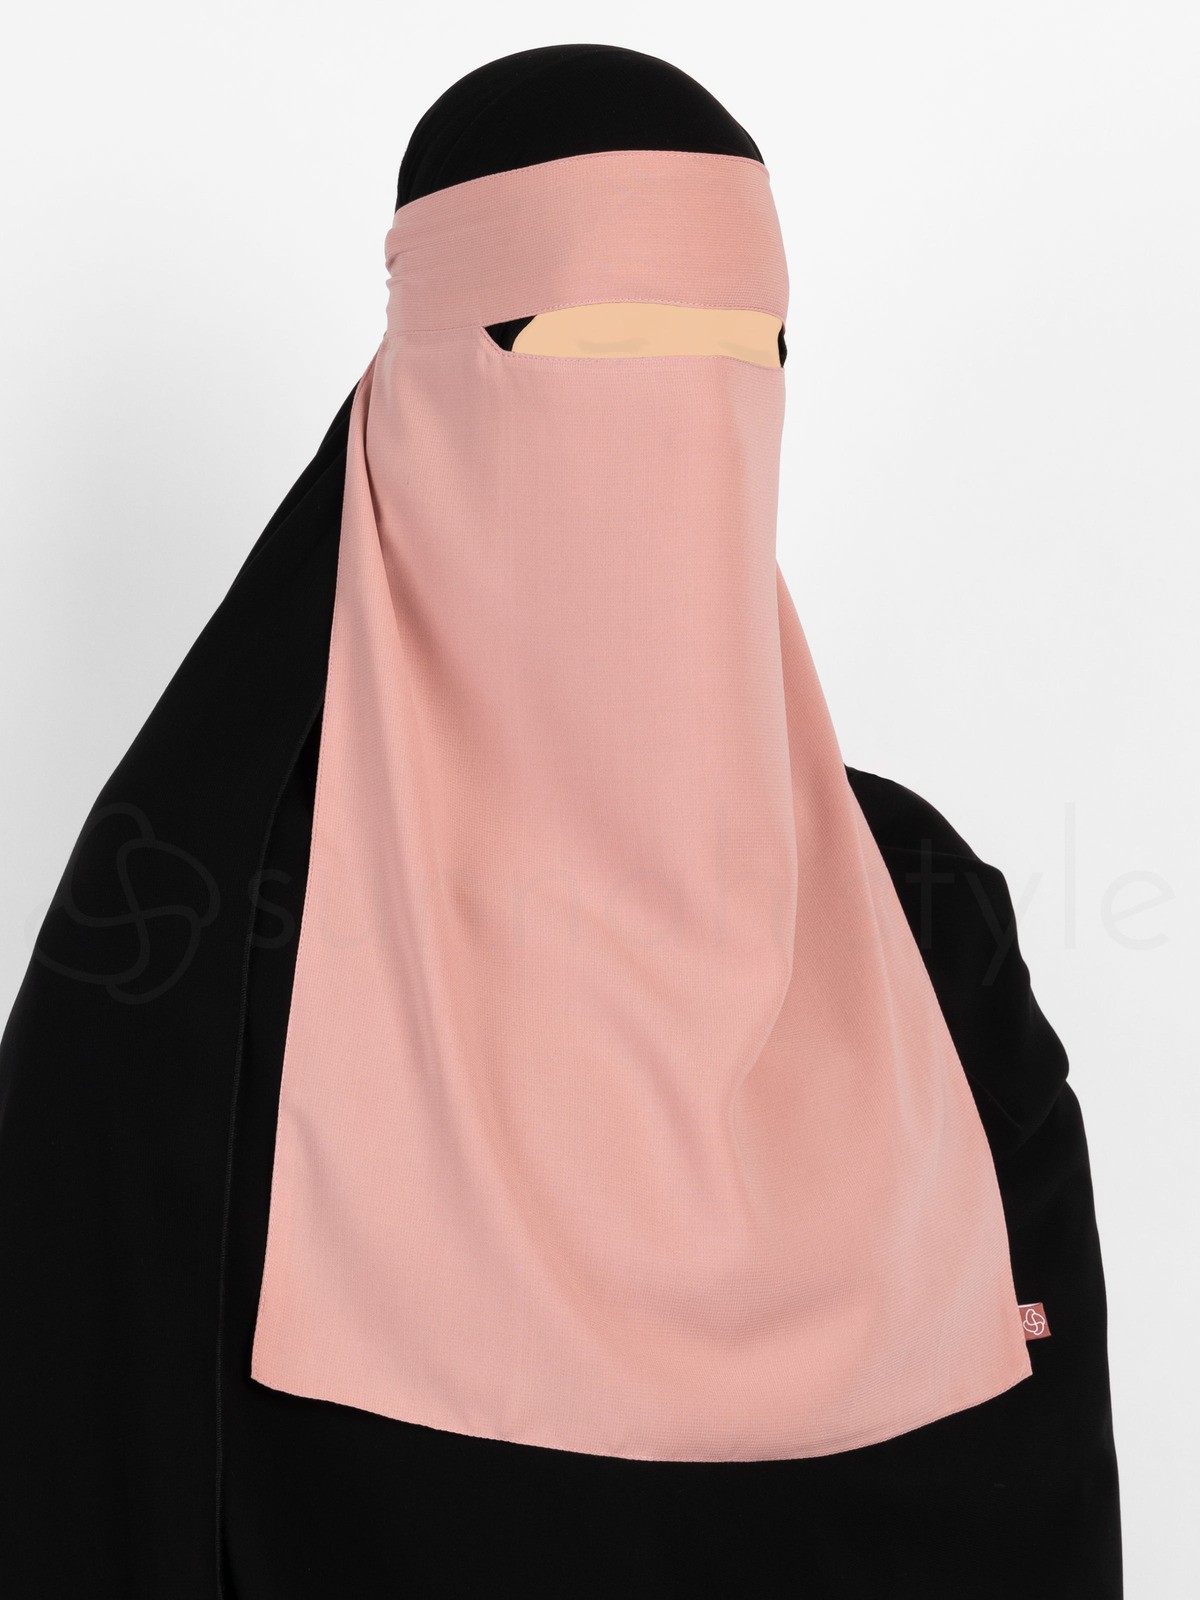 Sunnah Style - Narrow No-Pinch One Layer Niqab (Blush)